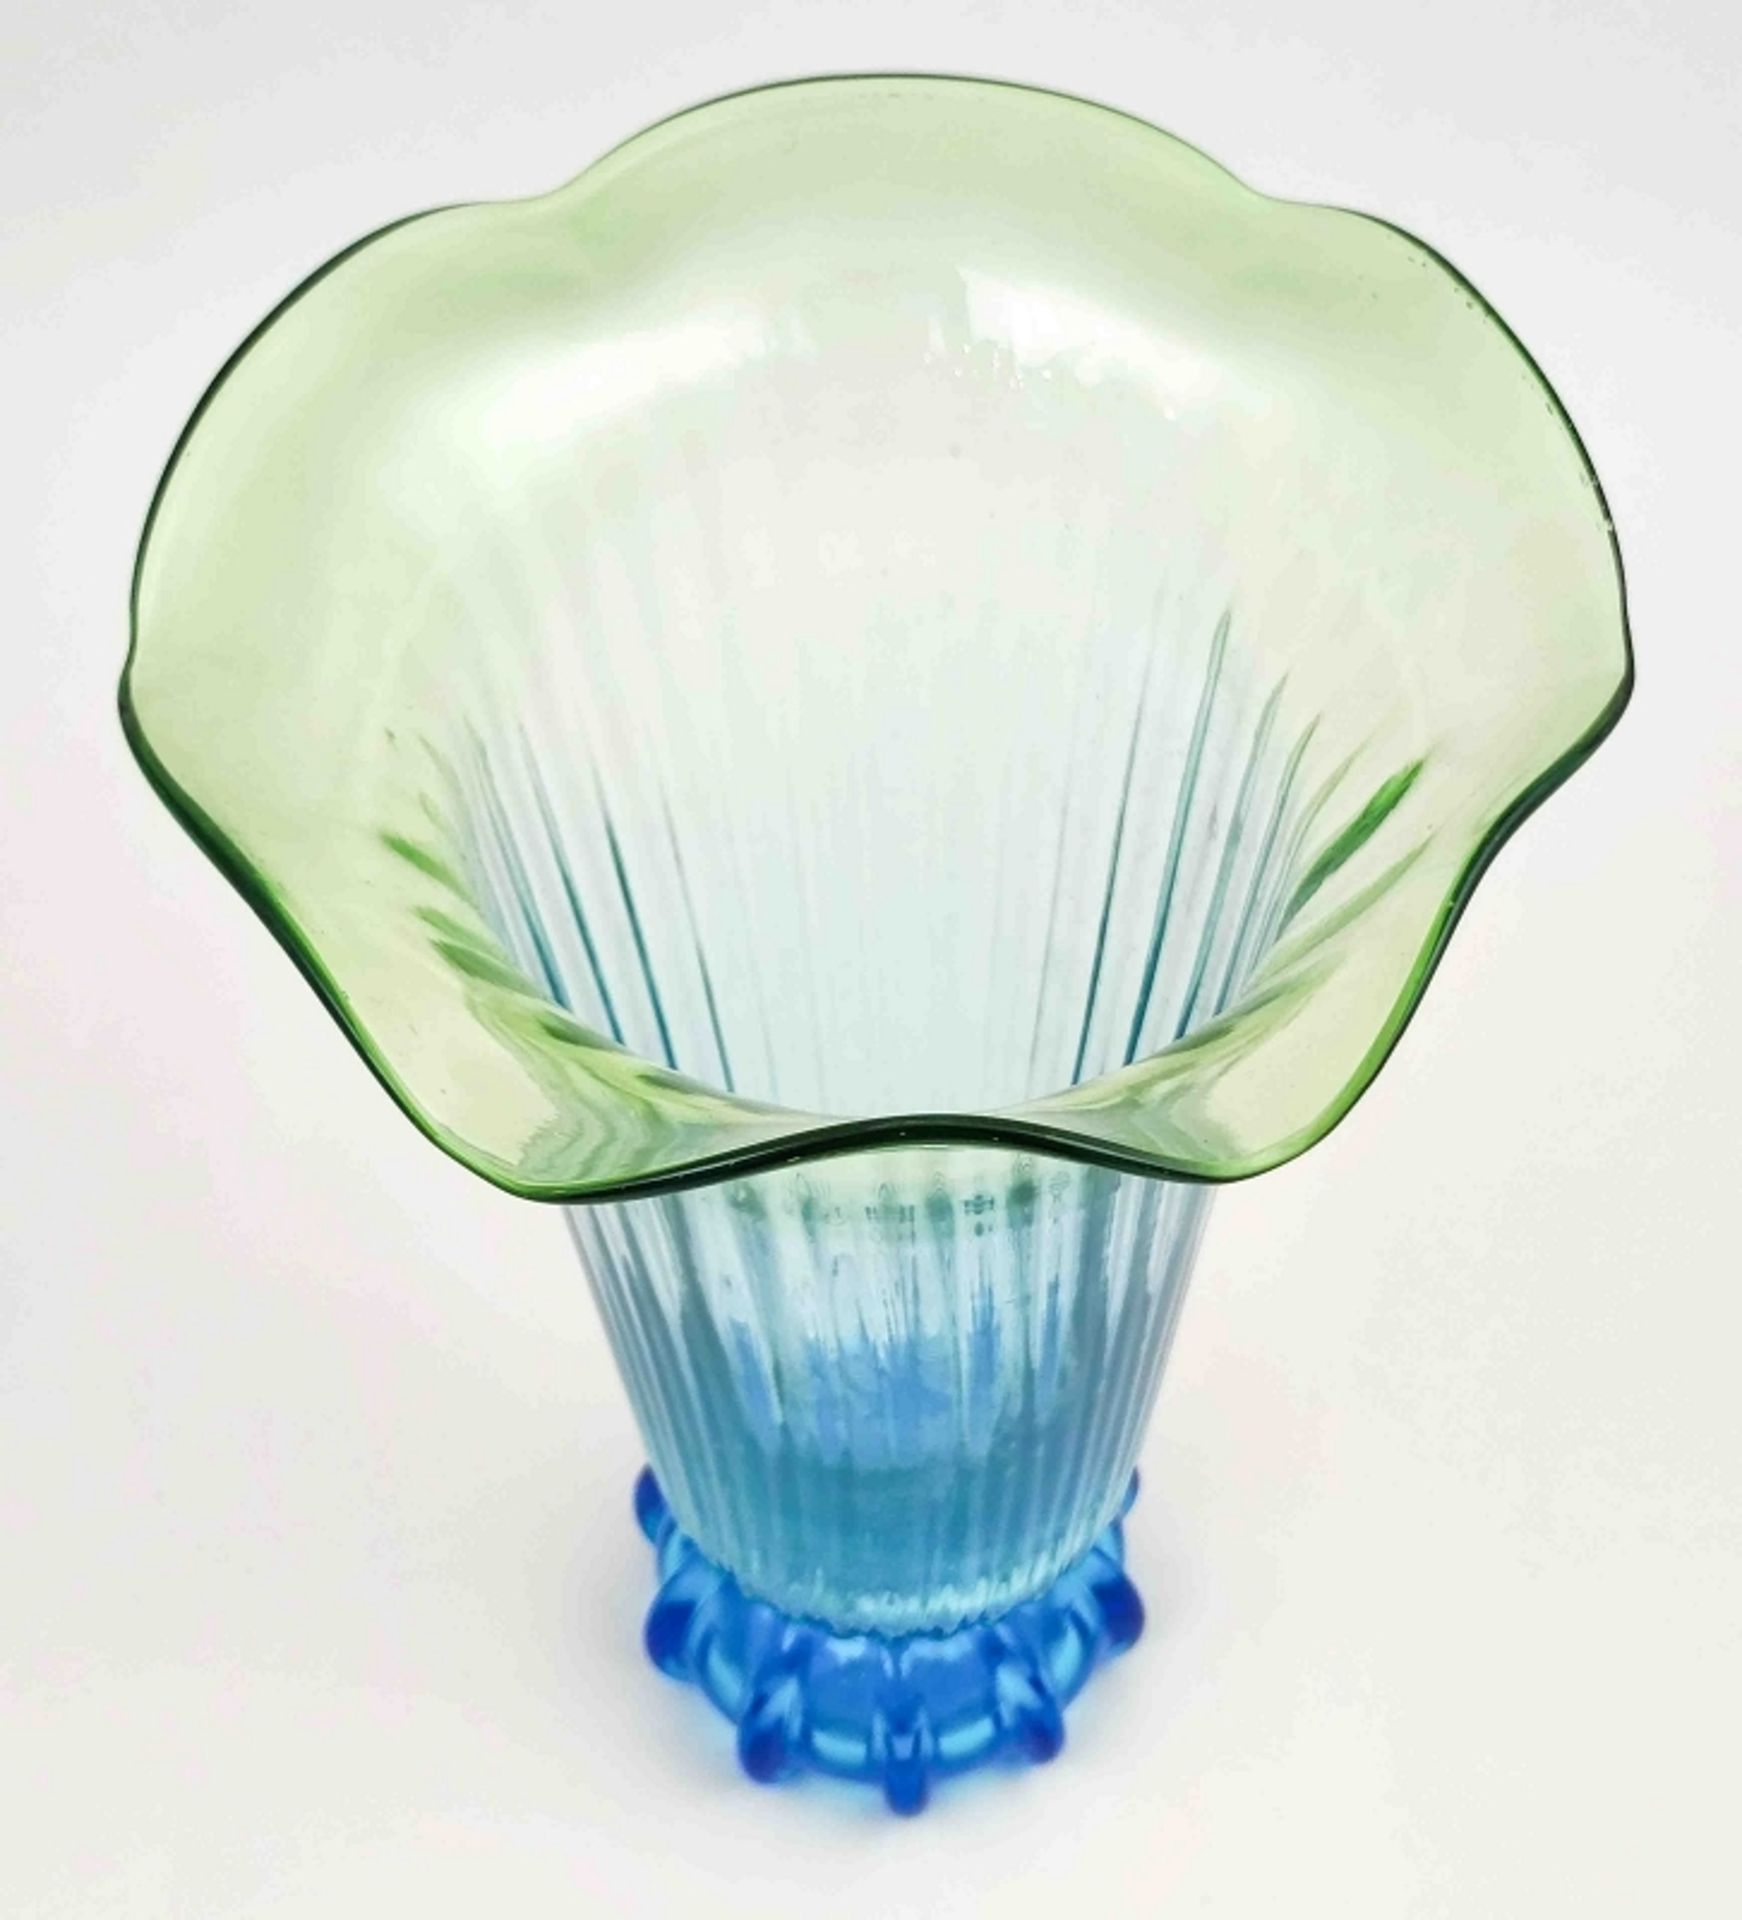 Große Jugendstil Glas Vase blau gelb - Image 3 of 3